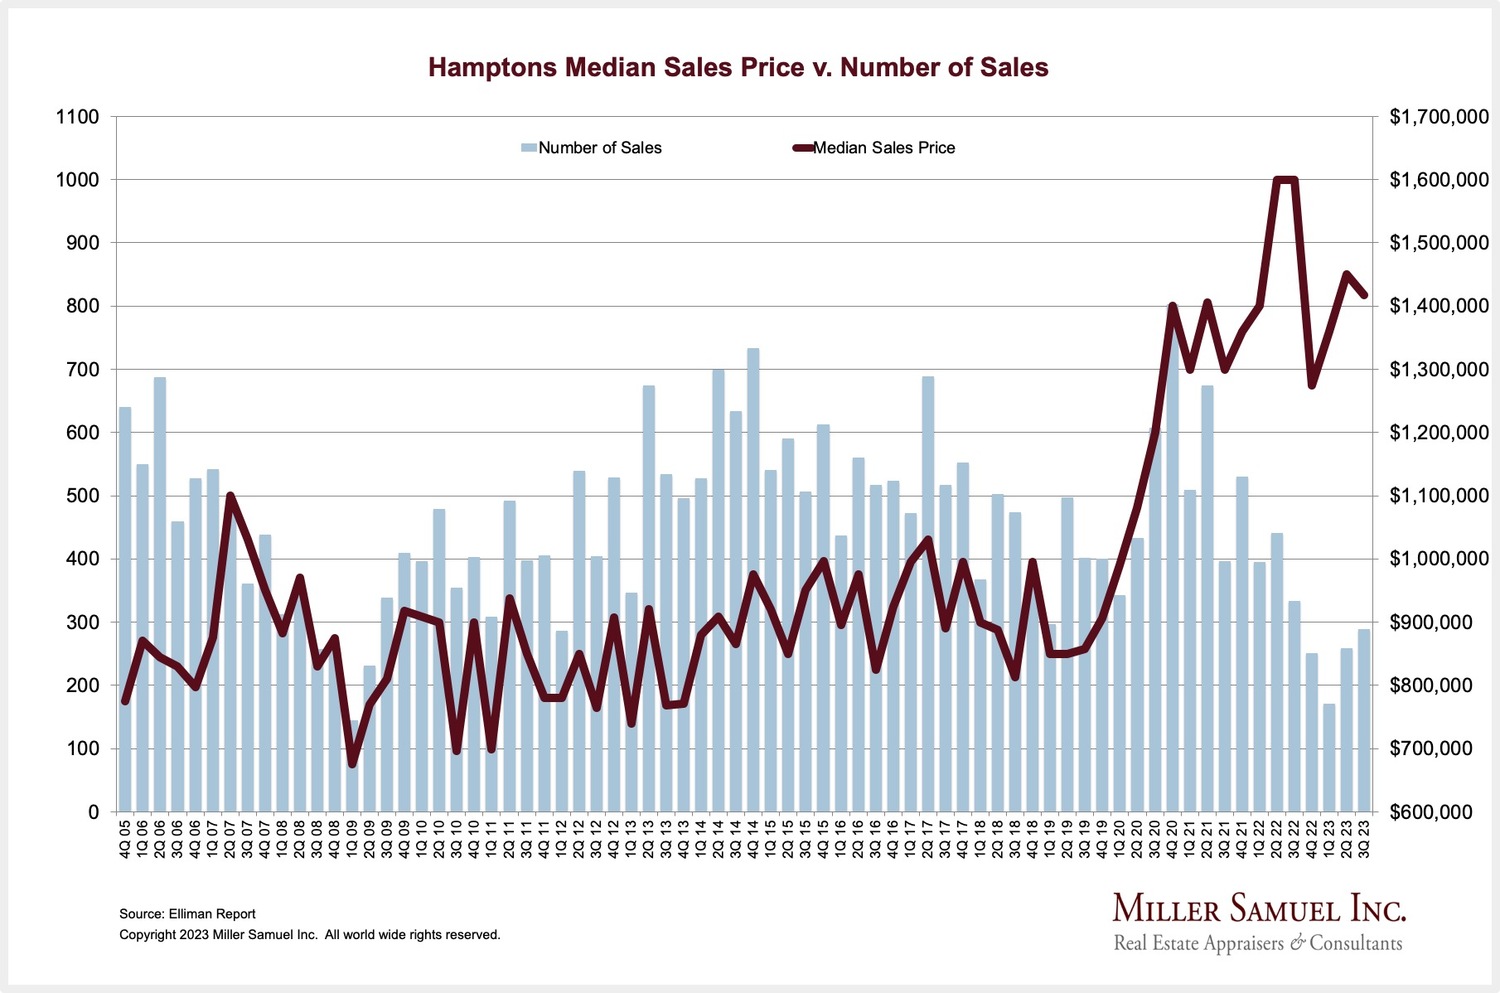 Median sales price versus number of sales.